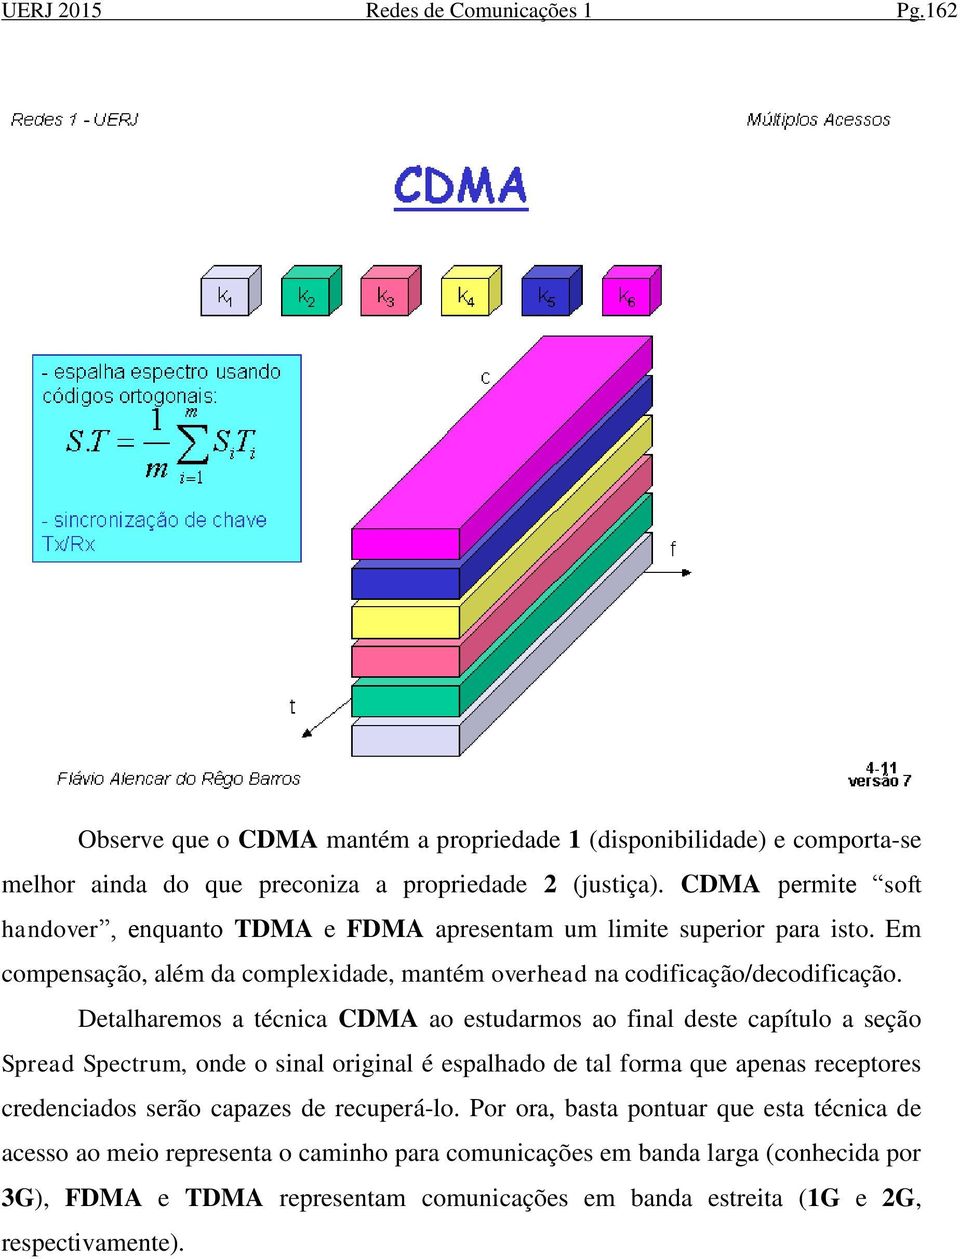 Detalharemos a técnica CDMA ao estudarmos ao final deste capítulo a seção Spread Spectrum, onde o sinal original é espalhado de tal forma que apenas receptores credenciados serão capazes de